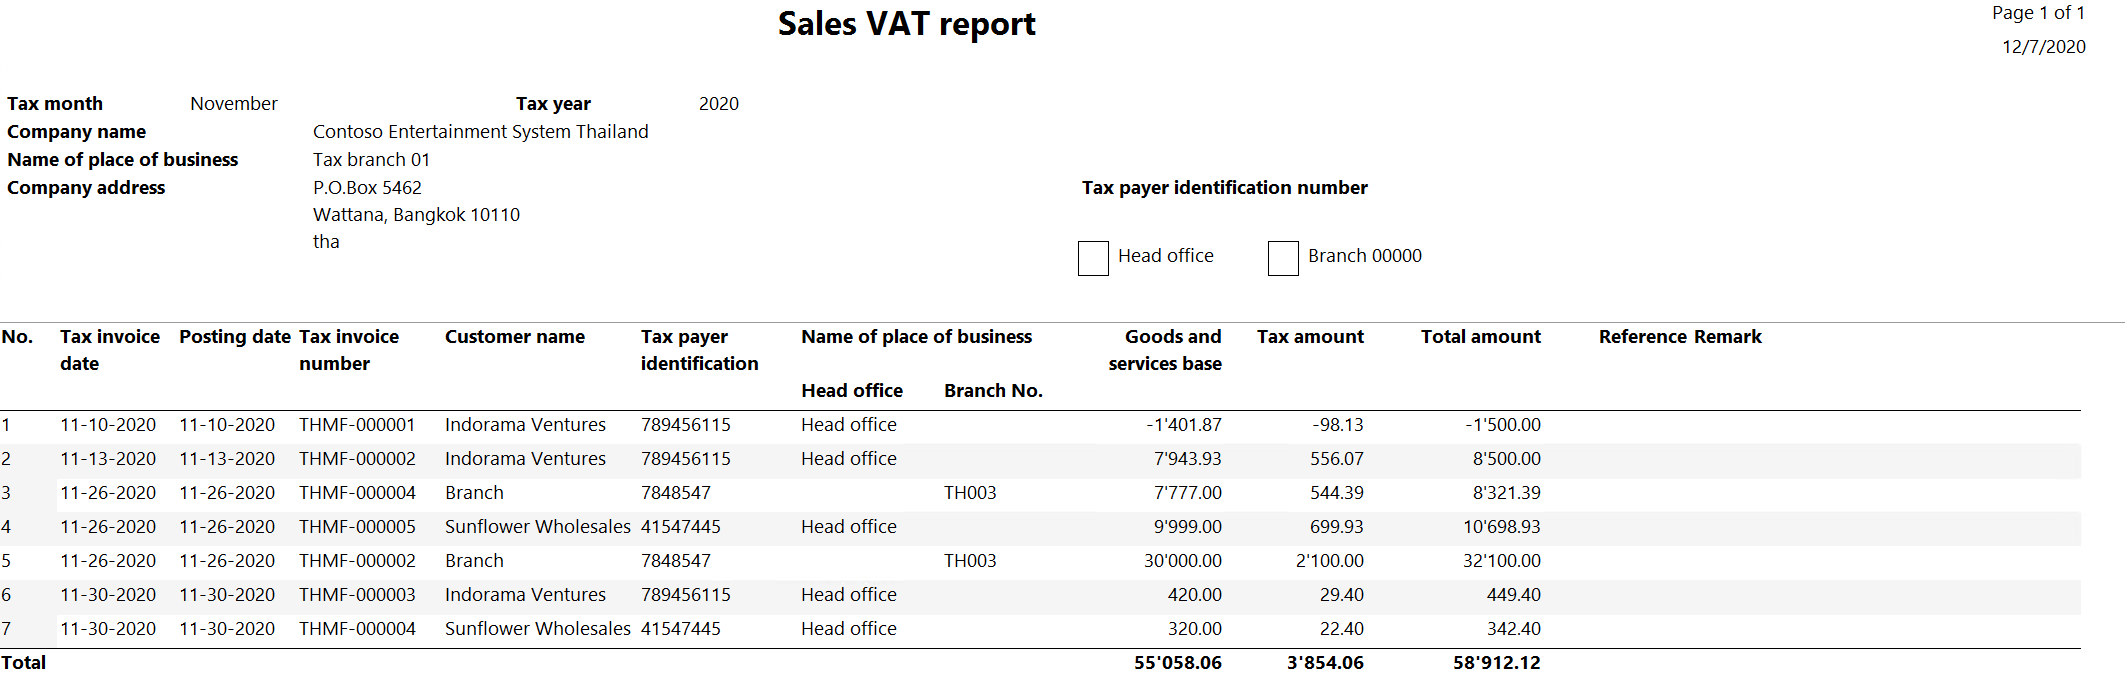 Sales VAT report.